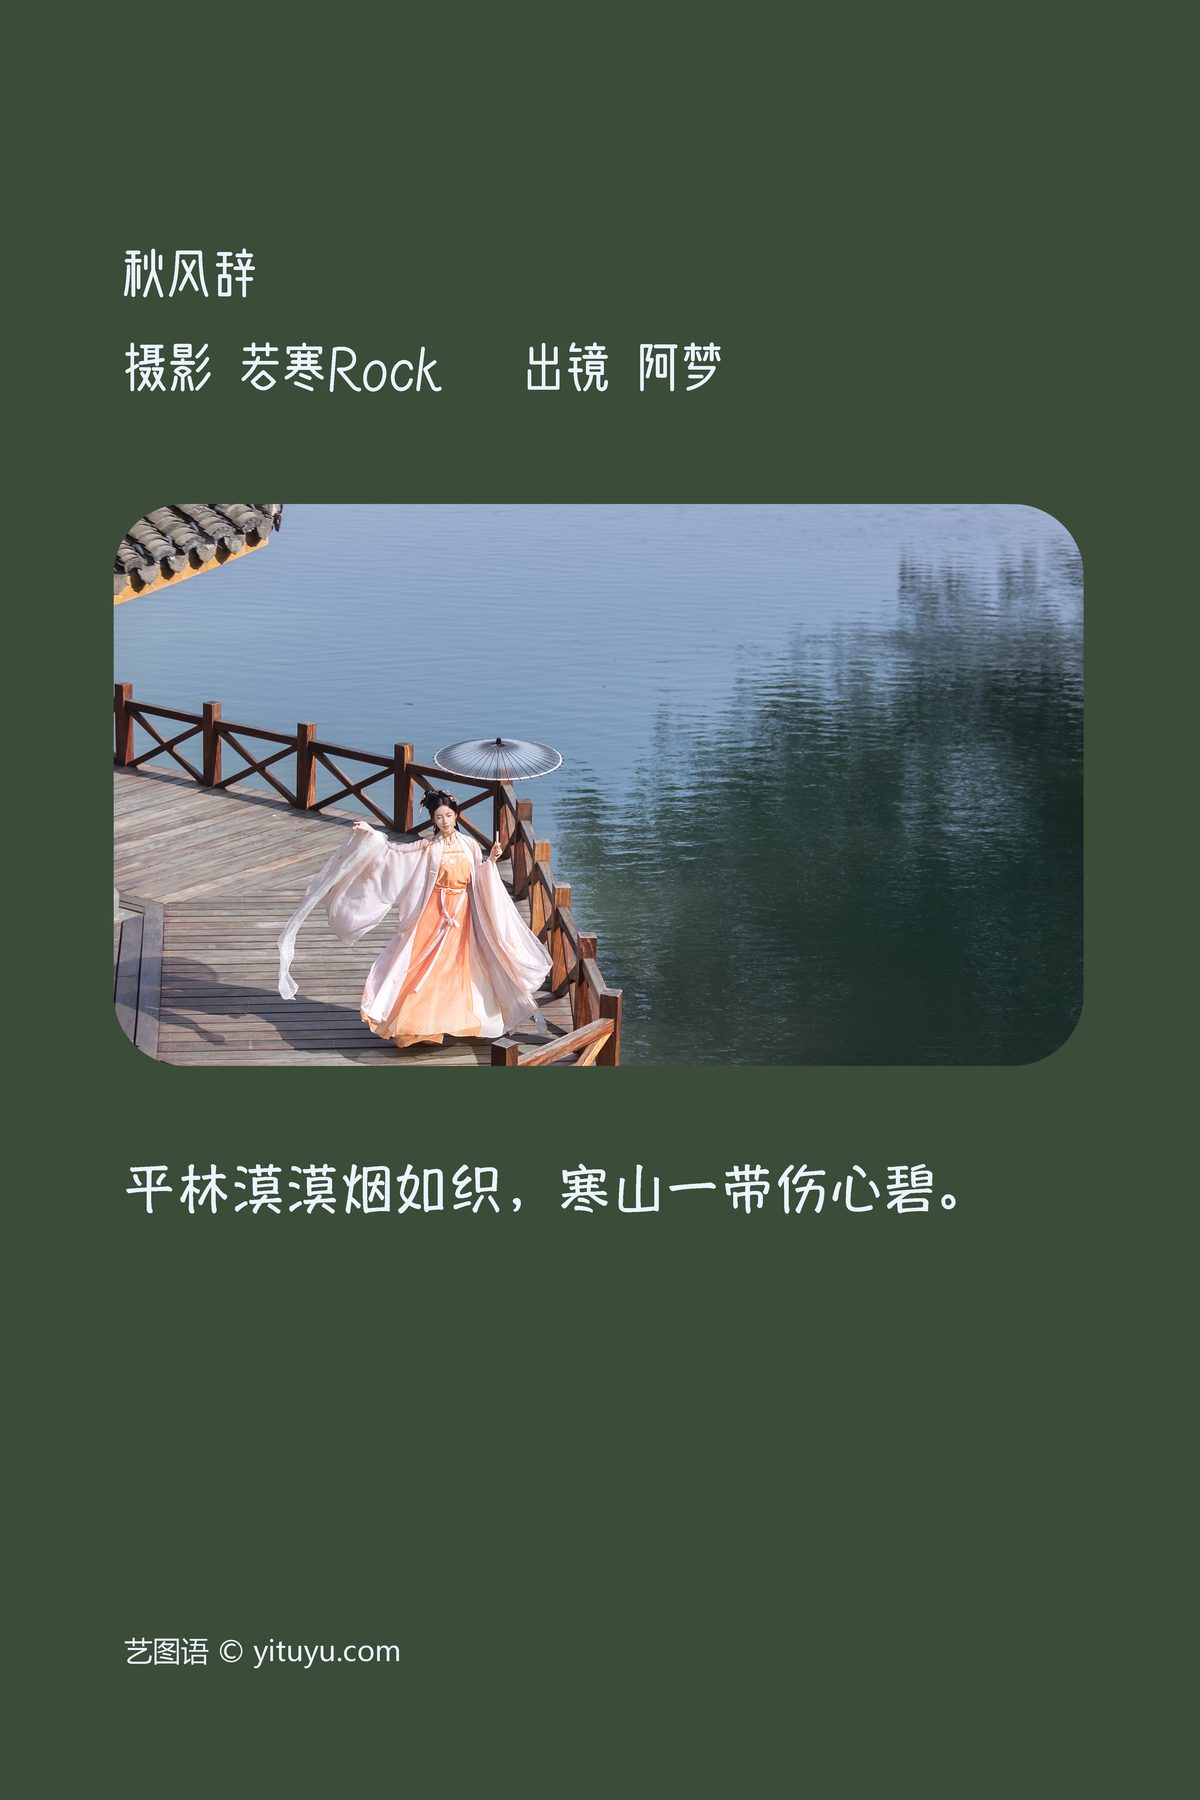 YiTuYu艺图语 Vol 3710 Yi Zhi A Meng Zai 0002 6568459313.jpg